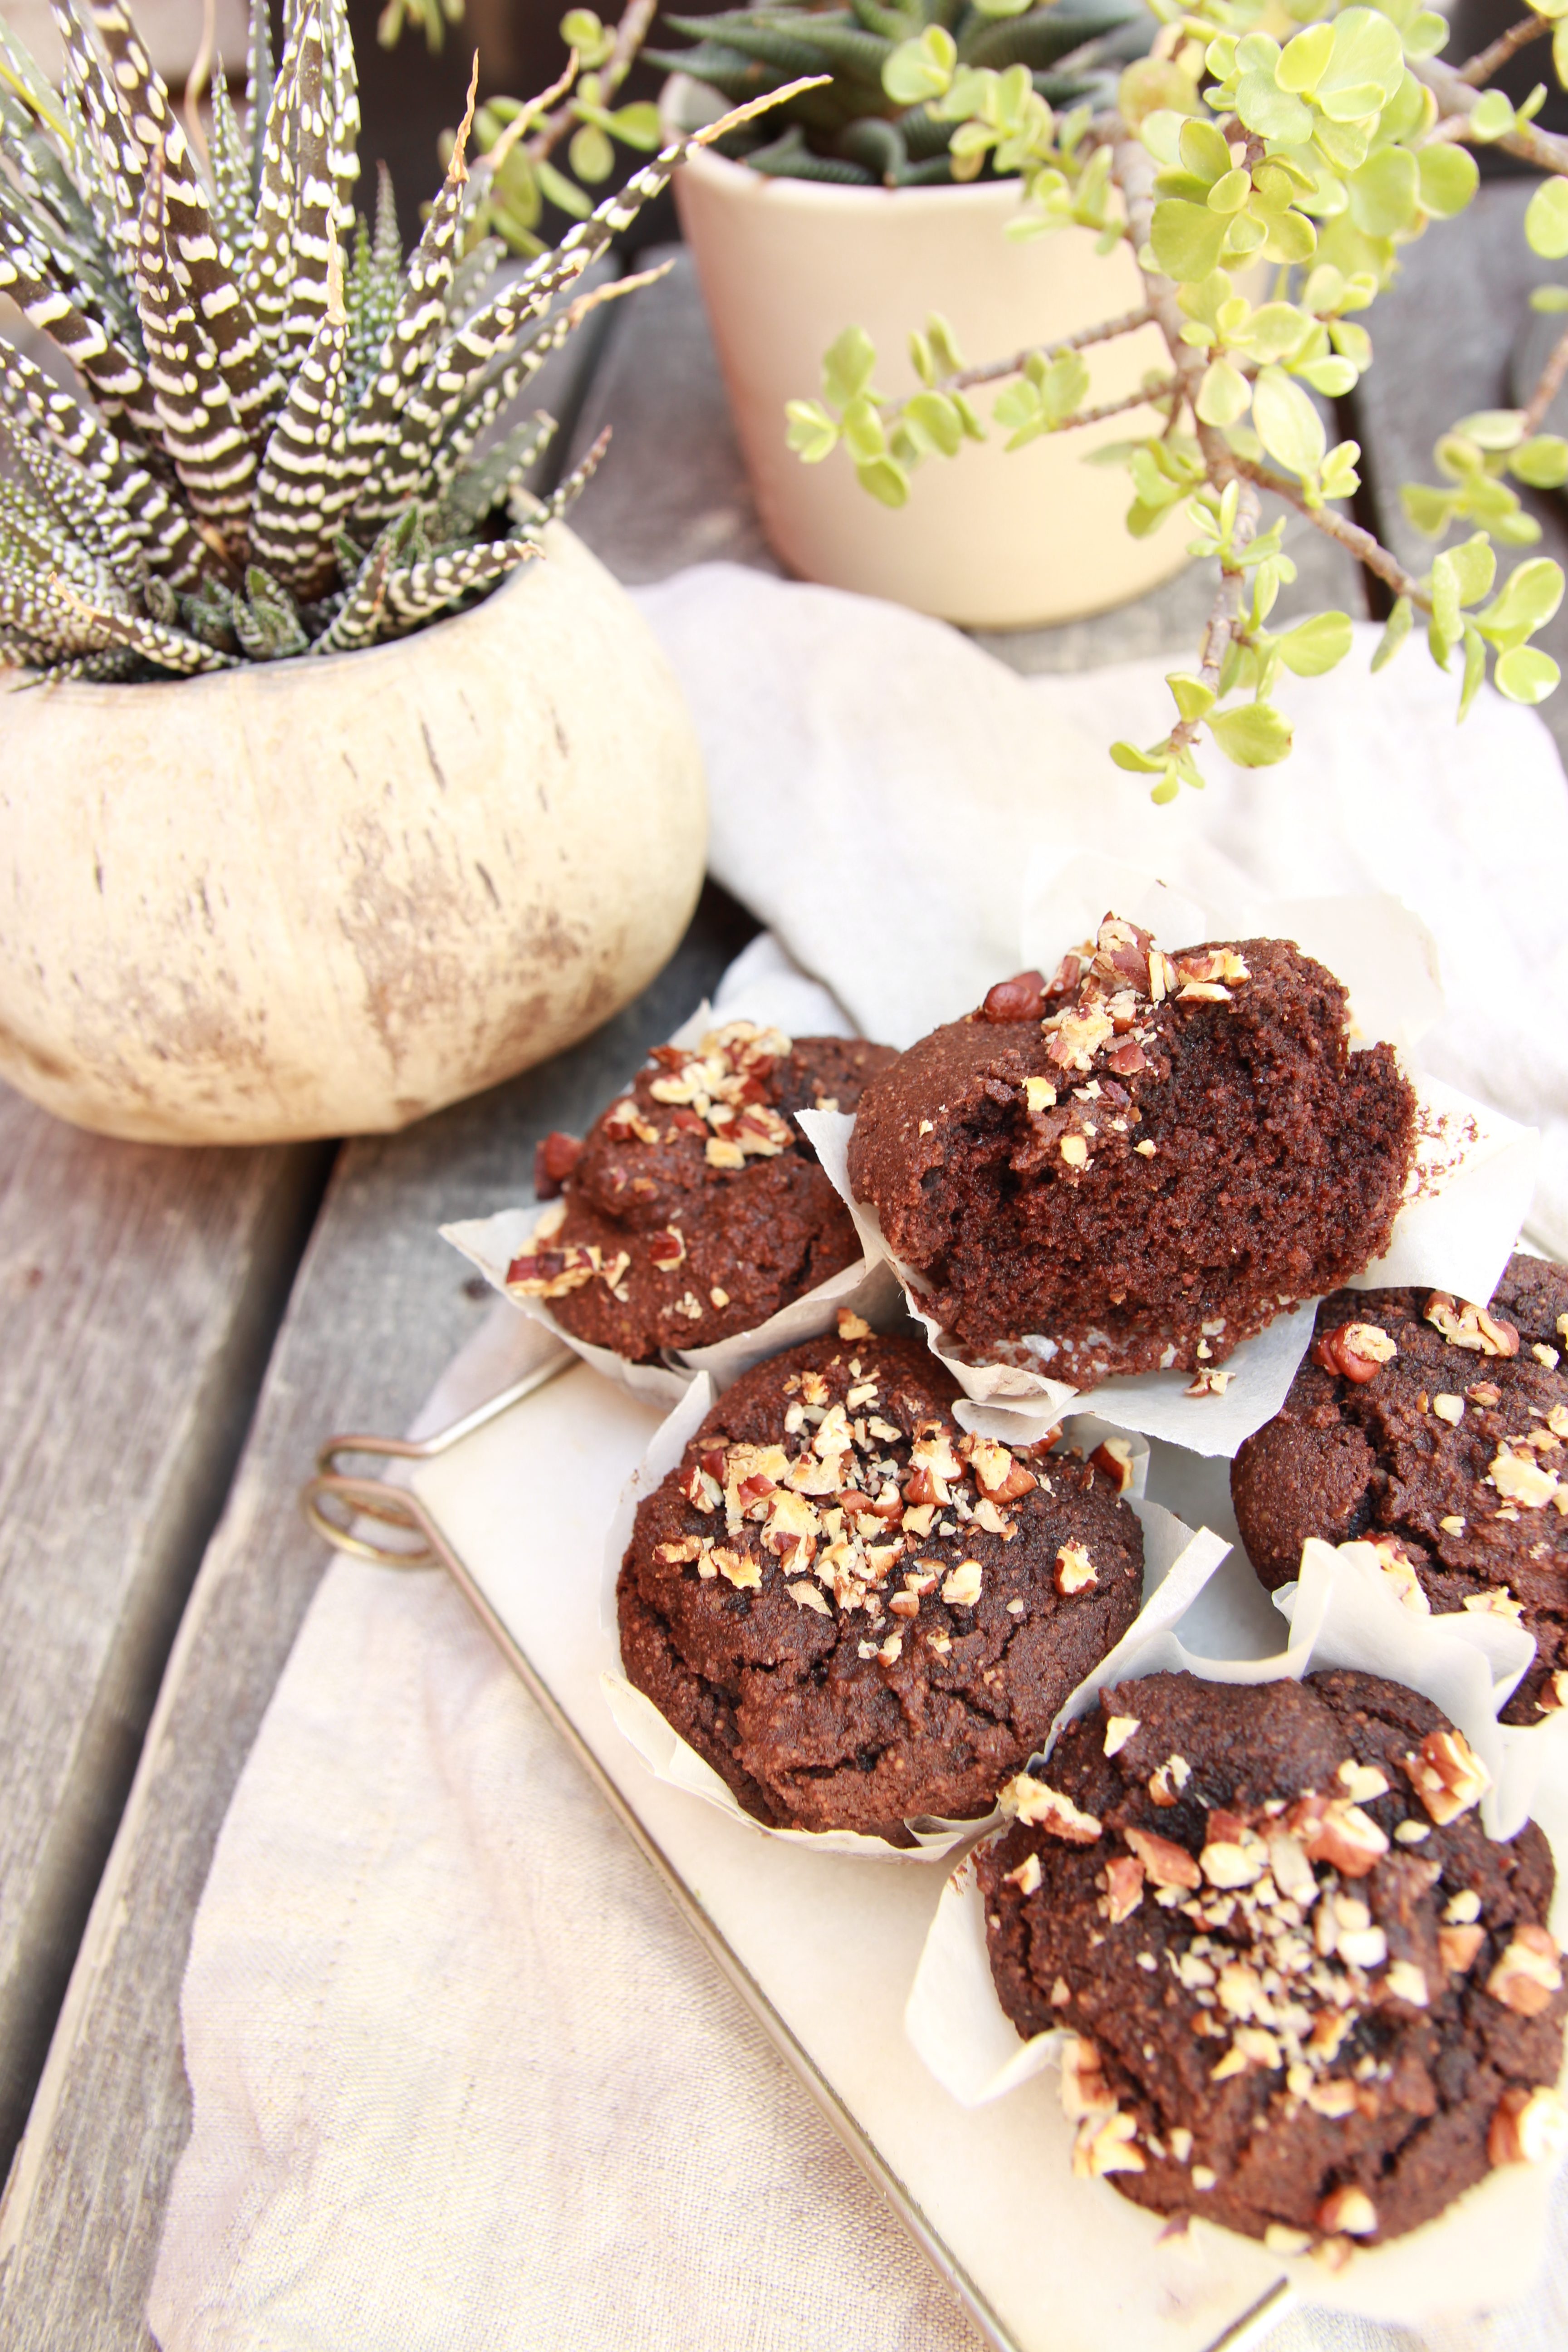 vegan chocolate muffin